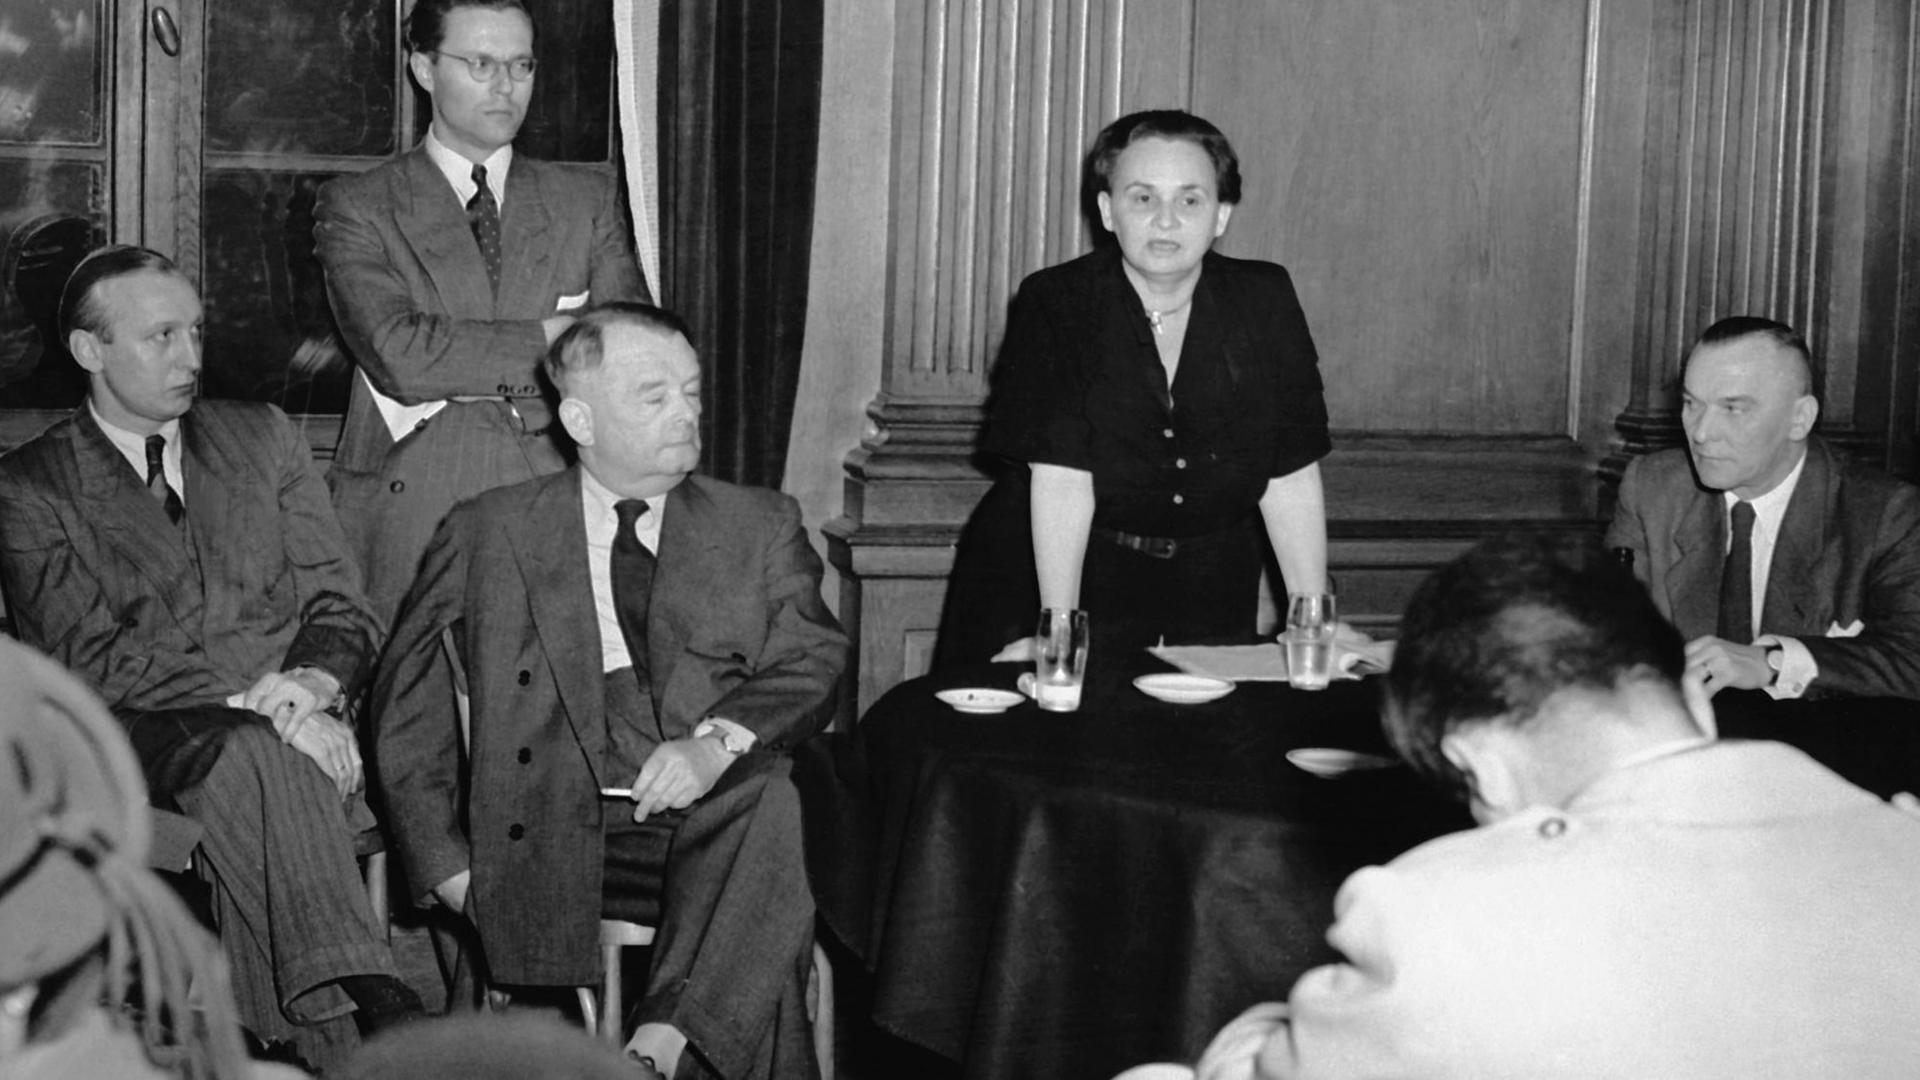 Ein schwarzweißes Foto zeigt die ehemalige deutsche Kommunistin Ruth Fischer während eines Vortrags im Mai 1951 in Frankfurt am Main, auf einen Tisch gestützt, umgeben von fünf  Männern in Anzügen